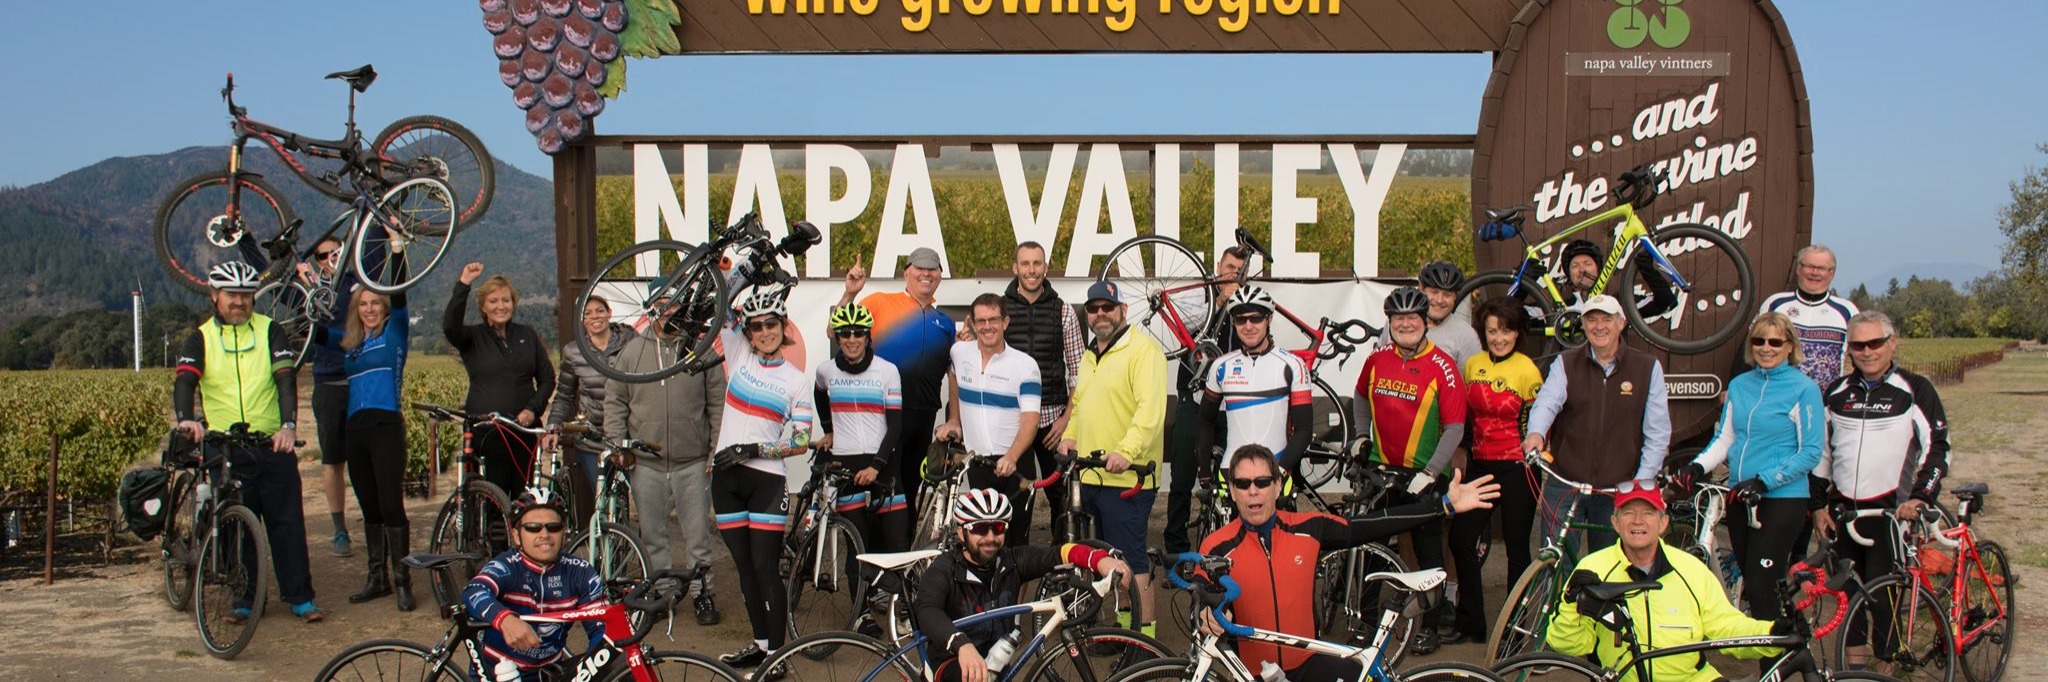 Napa Valley Velo Bike Shop Napa Ca St Helena Cyclery Napa Valley Velo